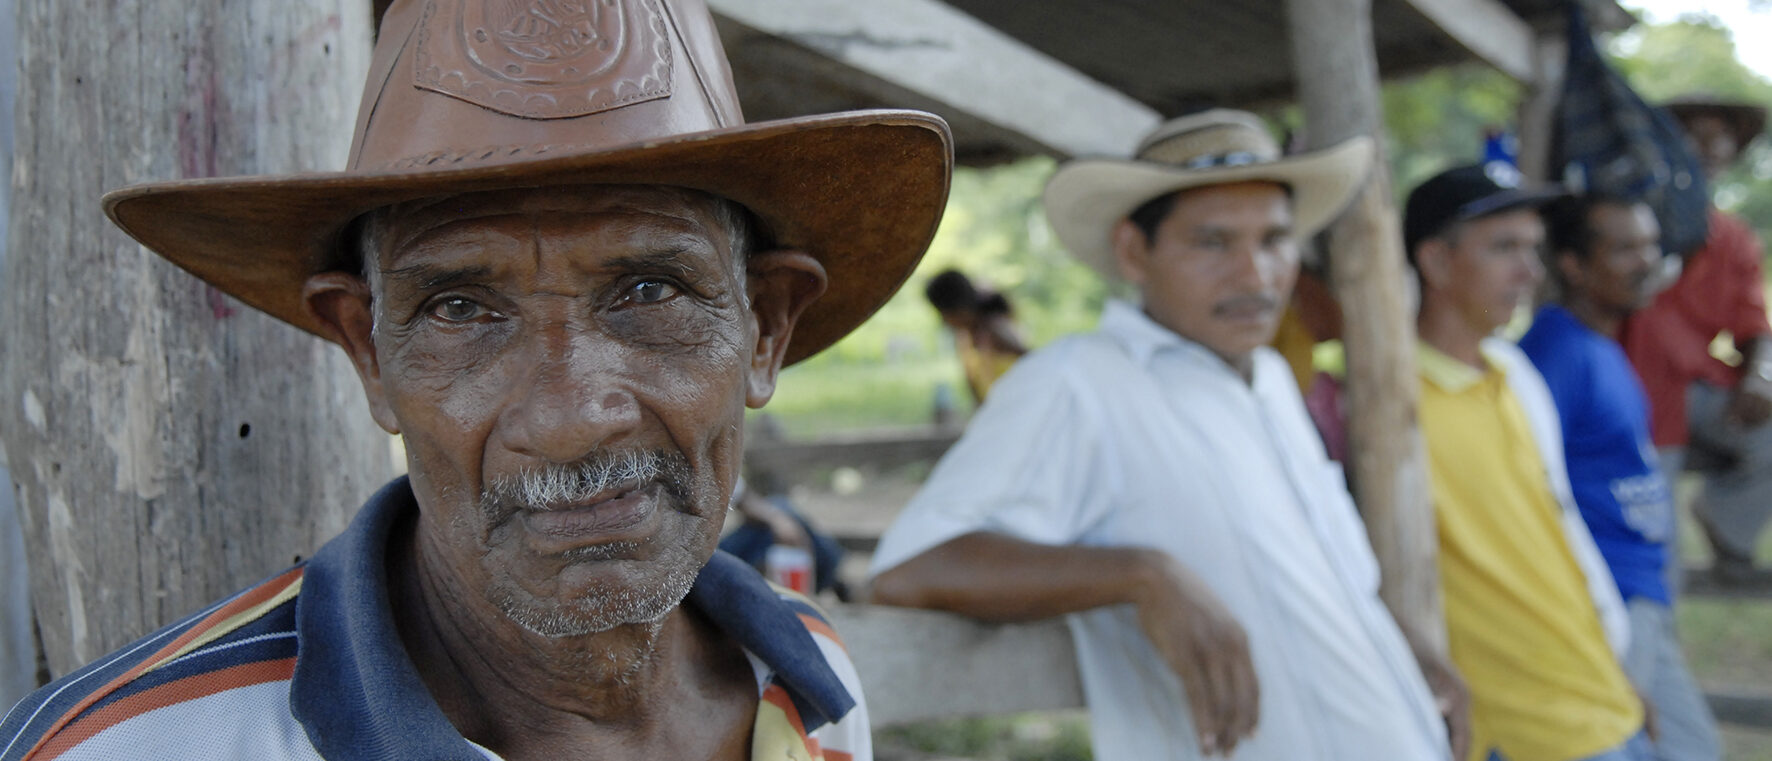 Un paysan de la côte Pacifique de Colombie, où un conflit armé est en cours | © Jean-Claude Gerez